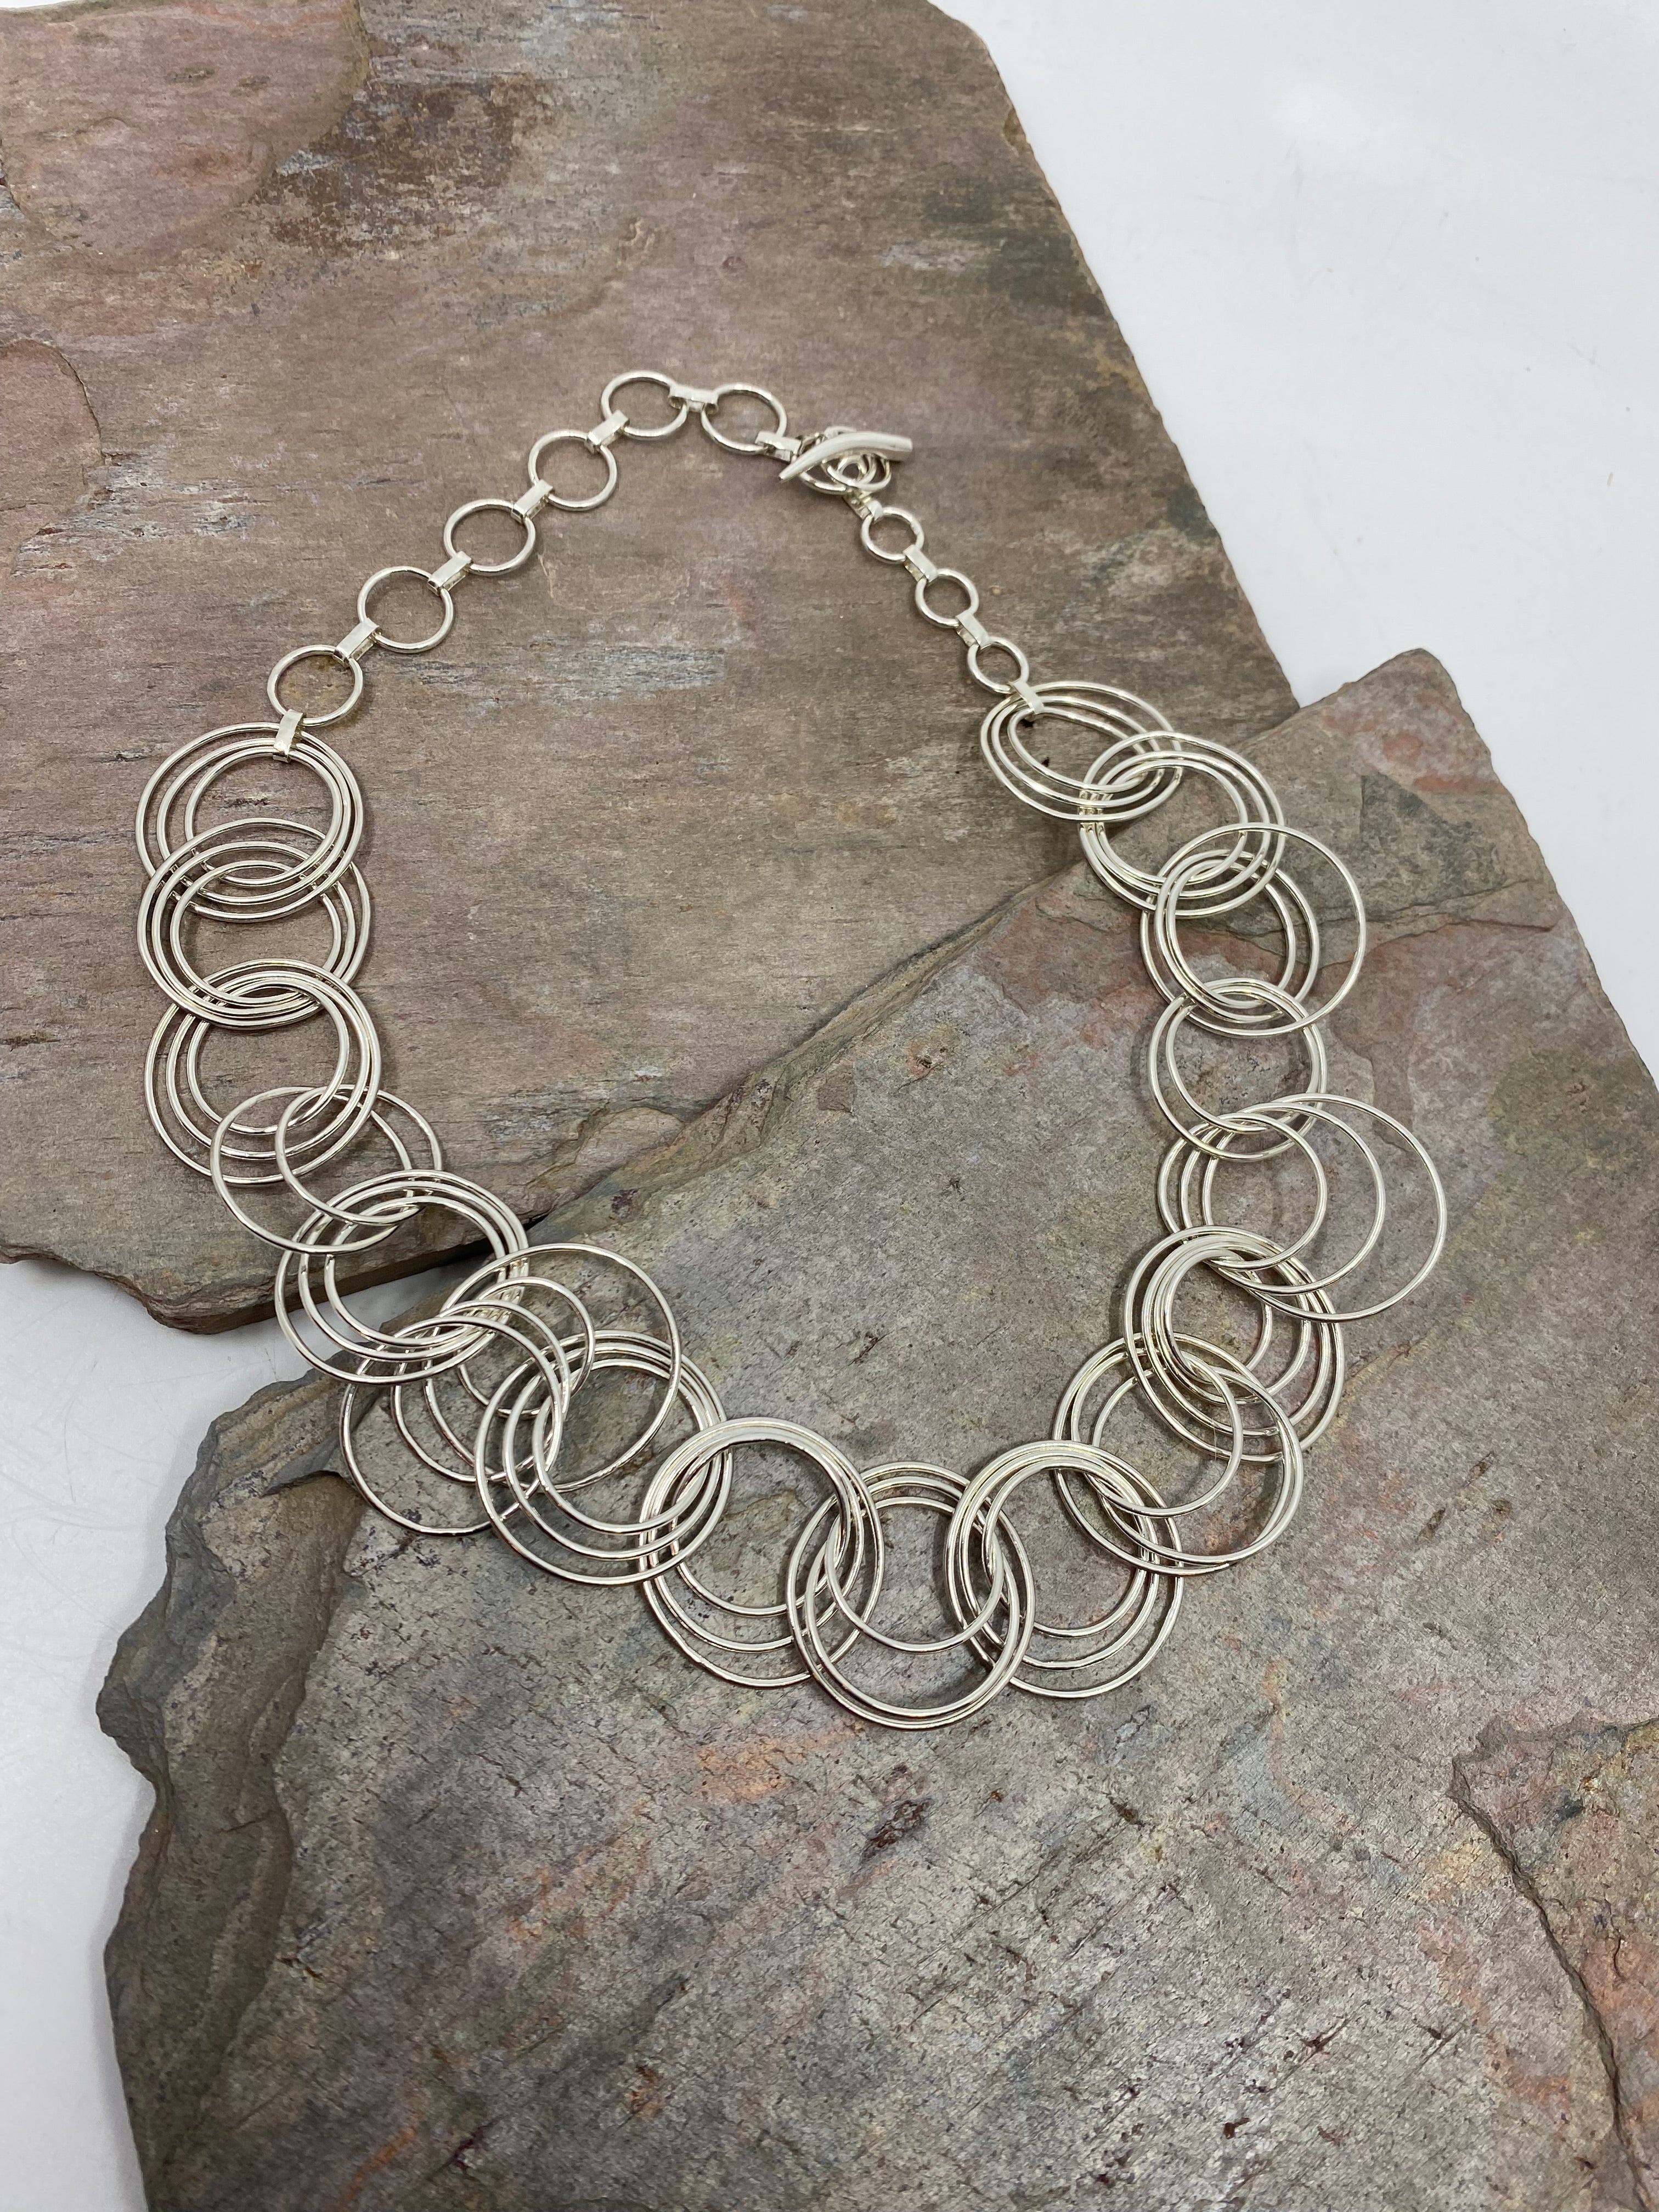 Centrifuge Rings Necklace Jewellery Kaye Parish 